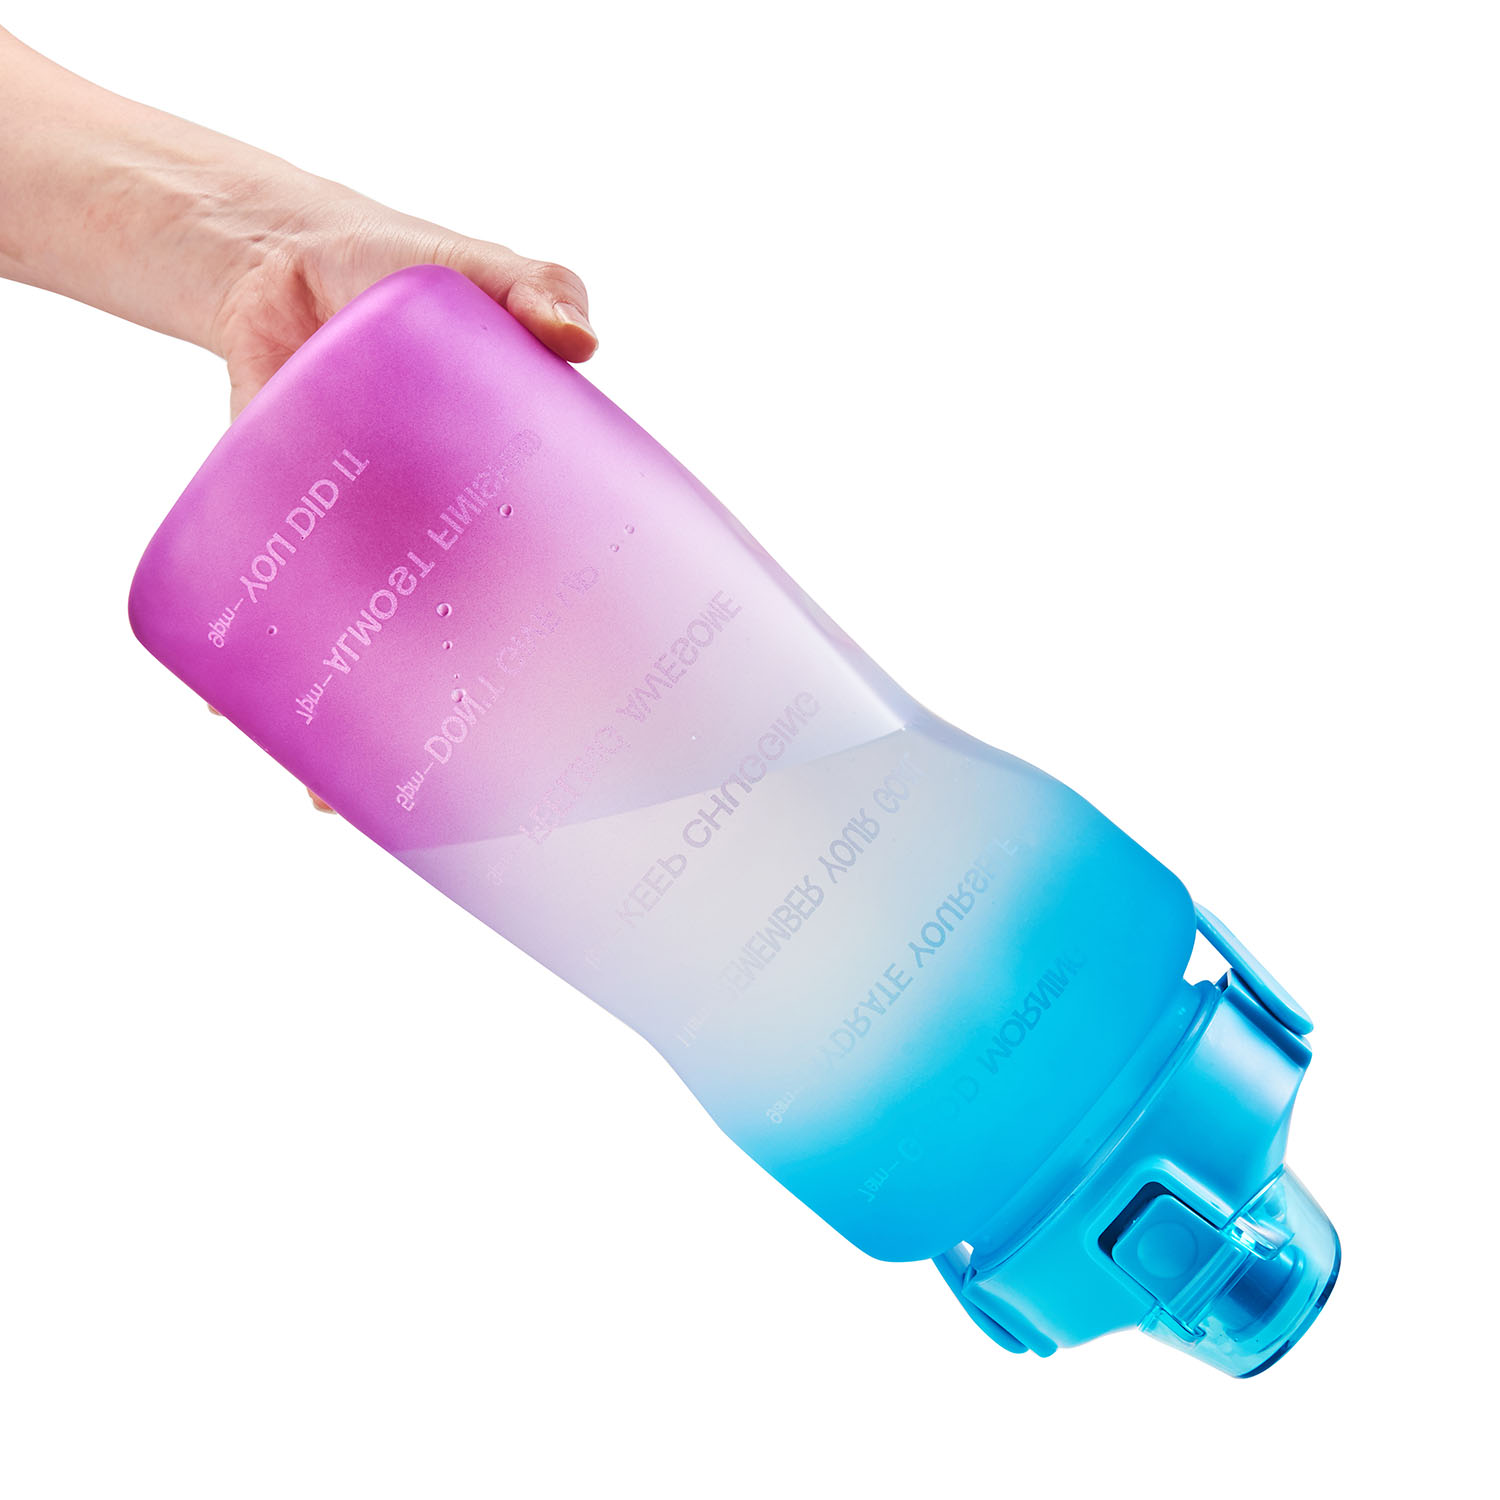 Wholesale Water Bottles 64 oz 2 Quart Half Gallon